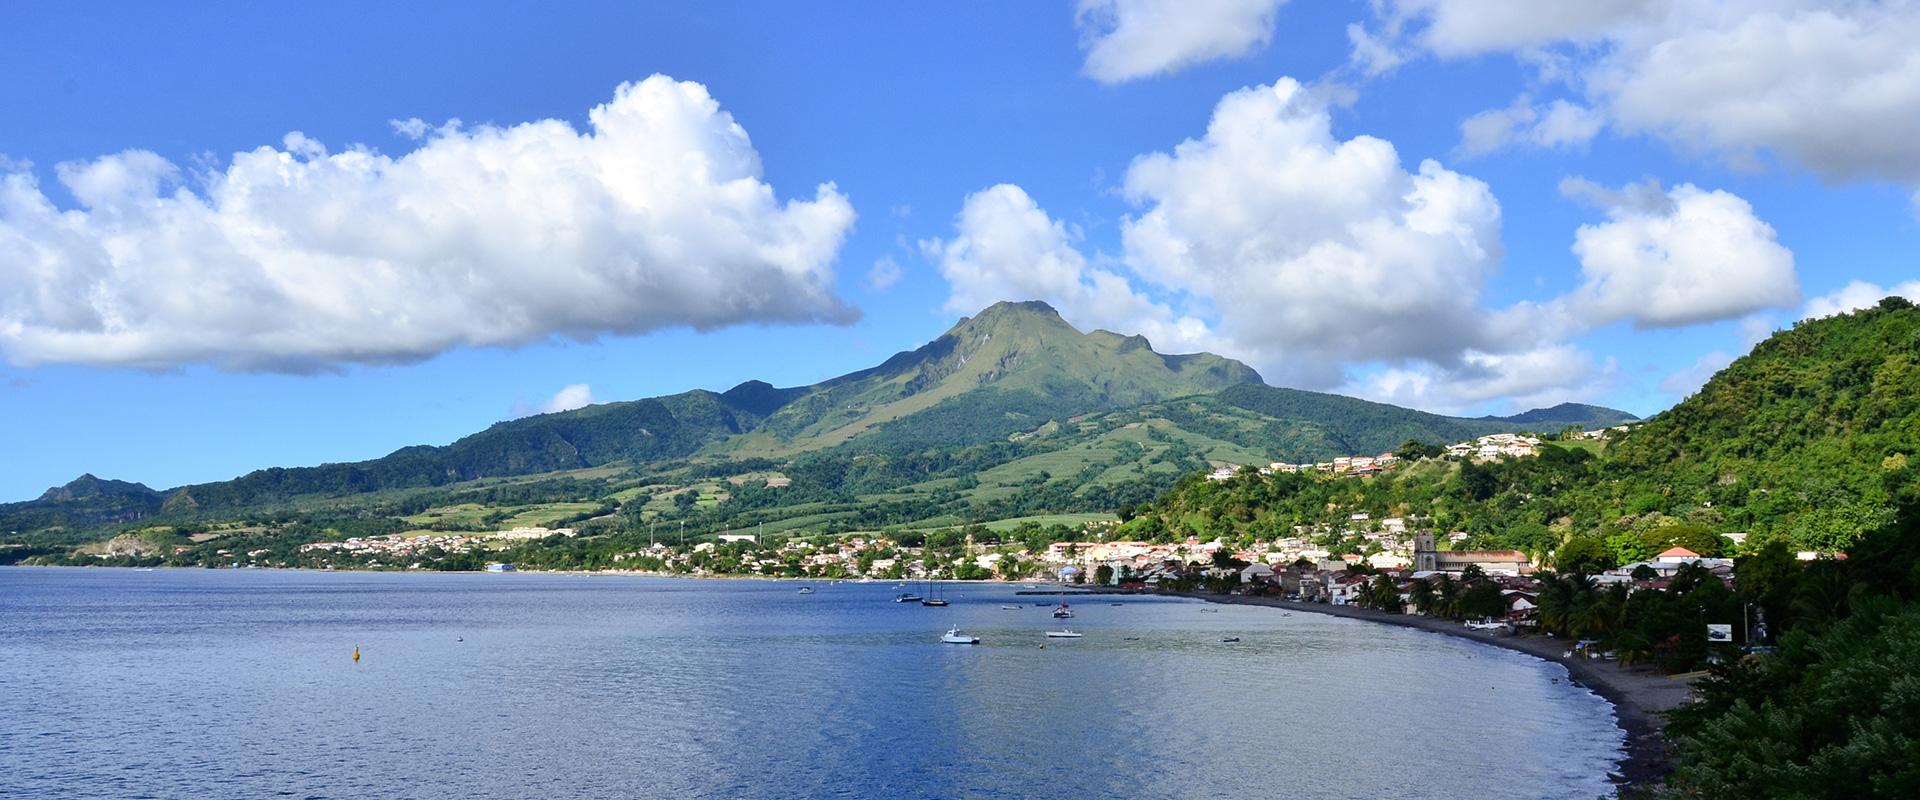 Baie de Saint Pierre, Martinique